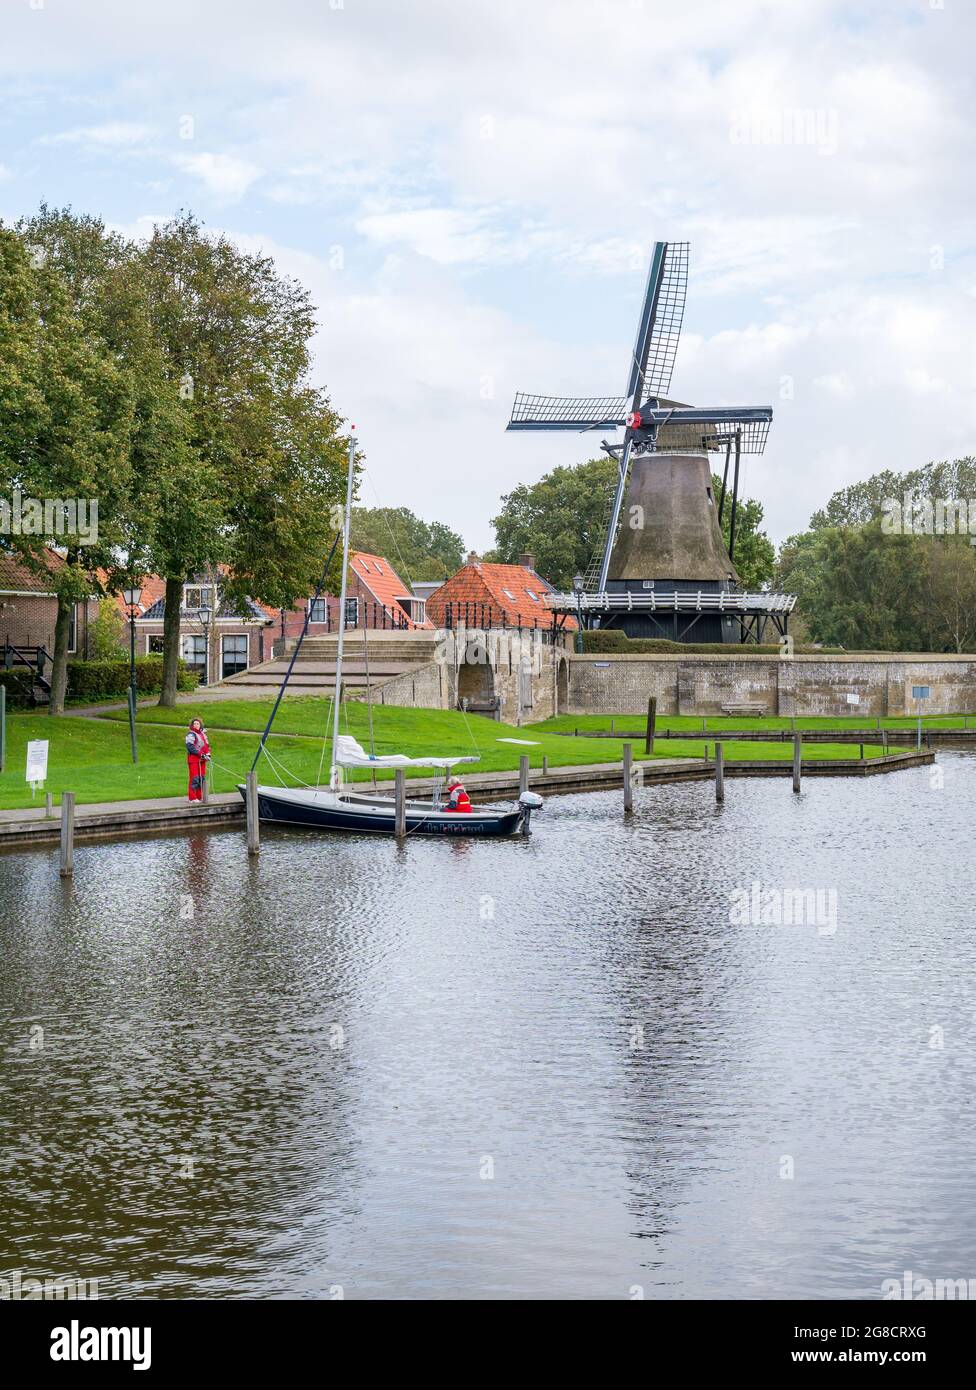 Moulin de Kaai et canal avec petit voilier dans la ville de Sloten, Sleat, à Friesland, pays-Bas Banque D'Images